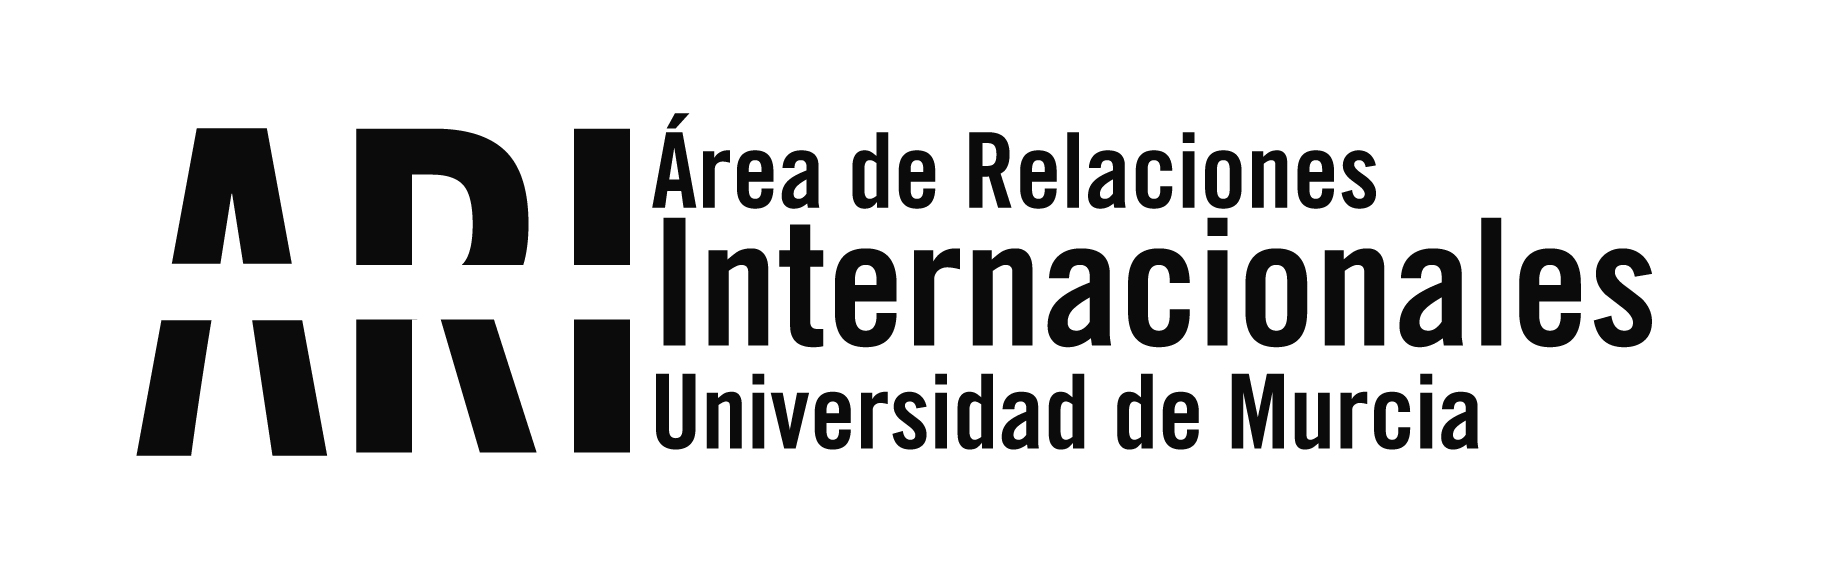 Reunión virtual/Visita de Estudio del proyecto Erasmus+ EQUAM-LA coordinado por la UMU para el desarrollo del Espacio Latinoamericano de Educación Superior - Área de Relaciones Internacionales